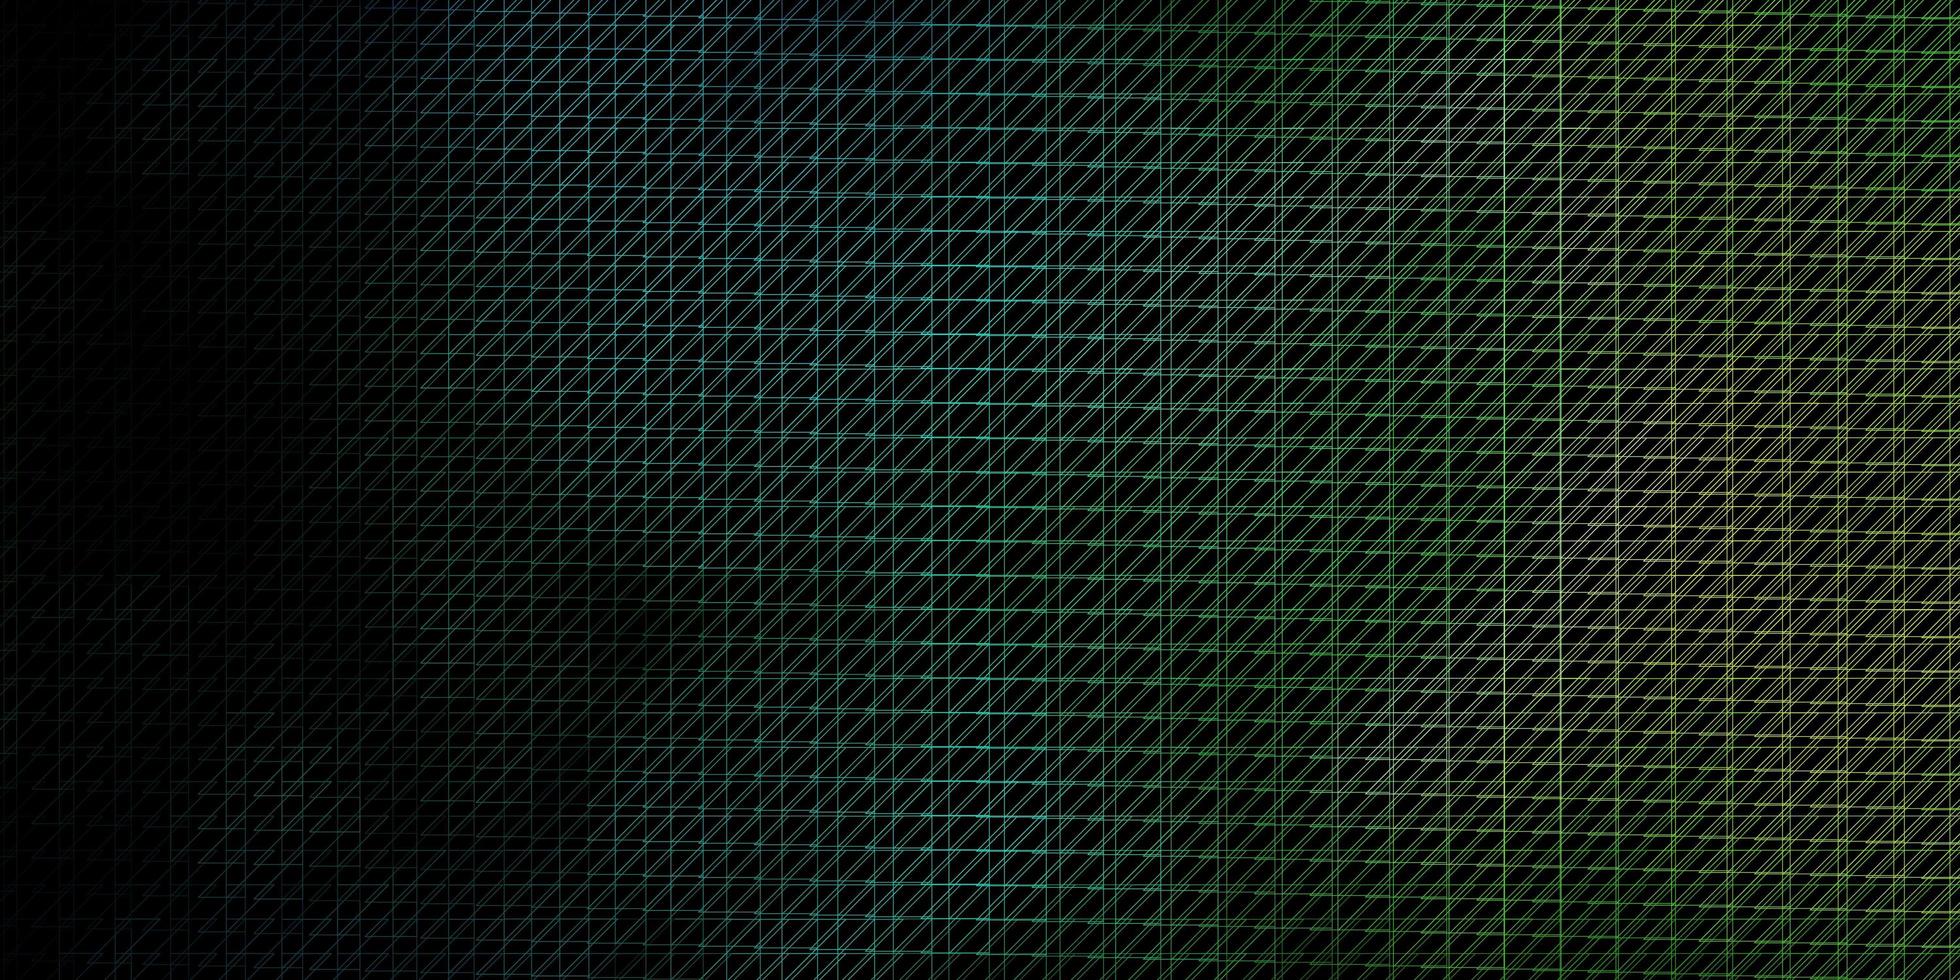 padrão de vetor azul e verde escuro com linhas.